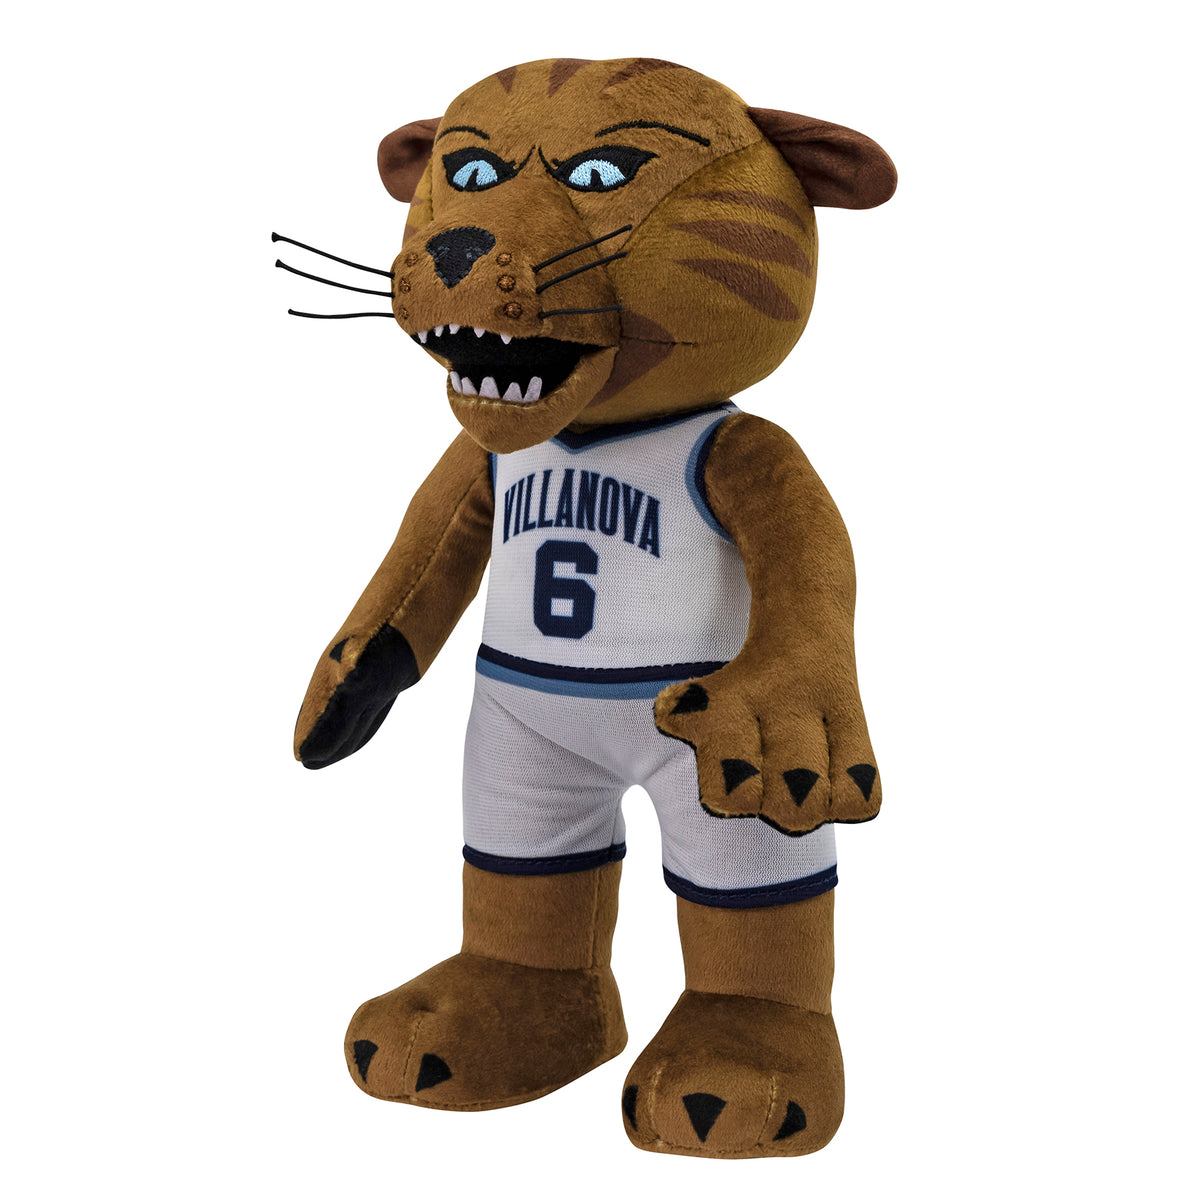 Villanova Wildcats Will D. Cat 10&quot; Mascot Plush Figure